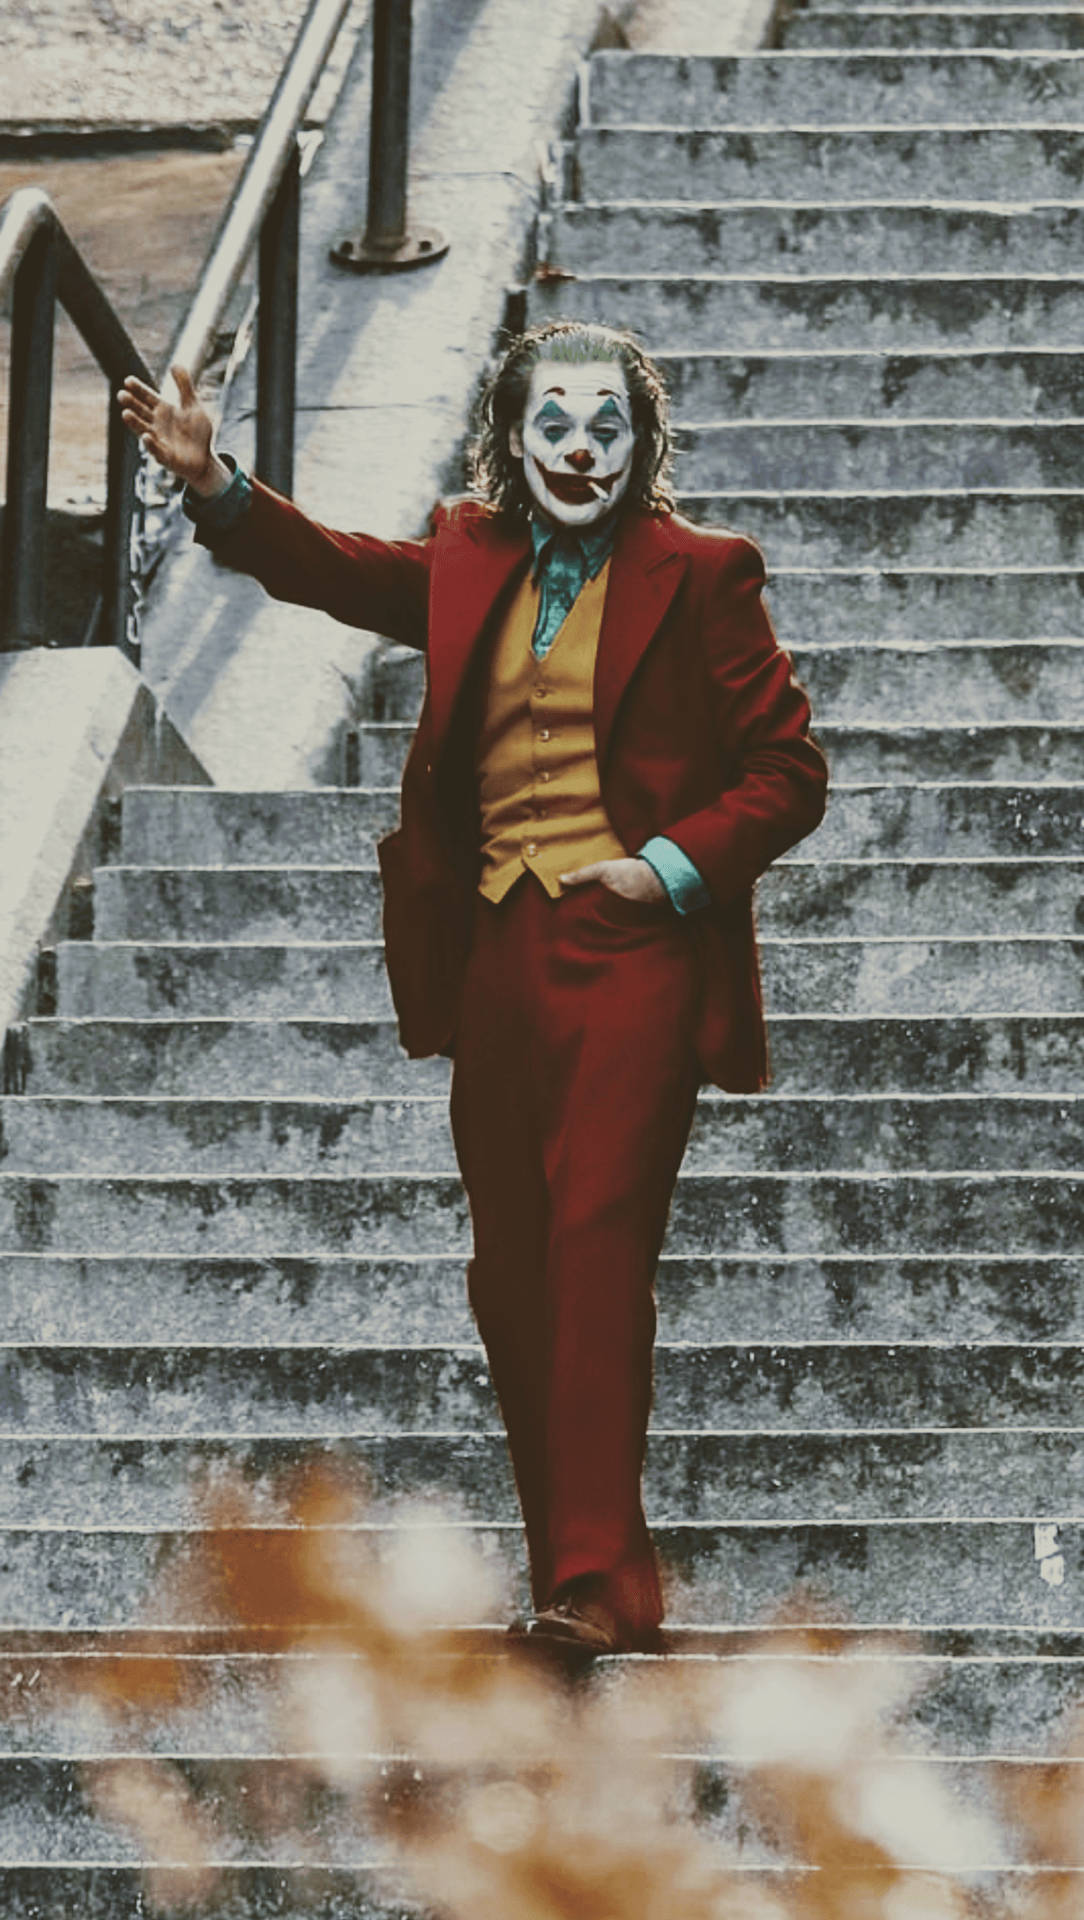 Roteanzug Joker 2020 Wallpaper